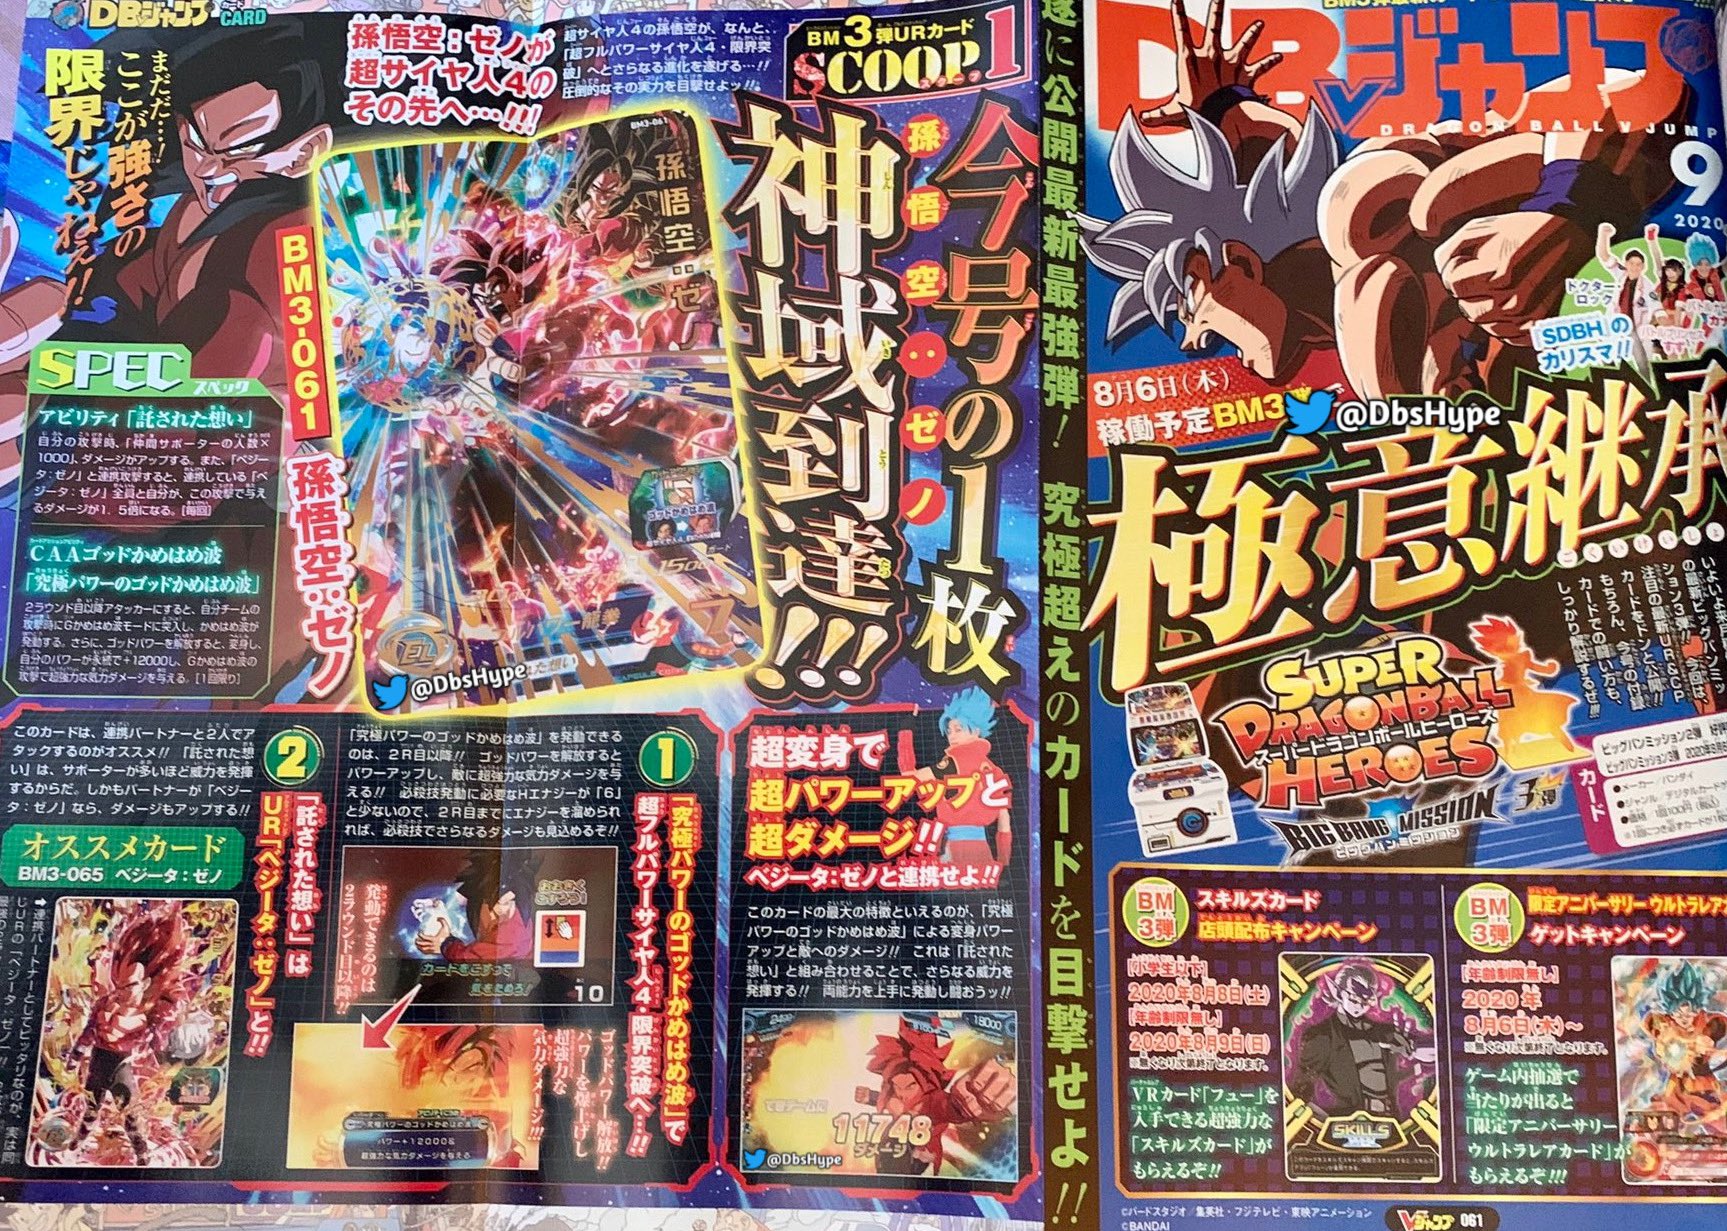 Super Full Power Saiyan 4 Es El Nombre De La Nueva Transformacion De Goku No Somos Nonos